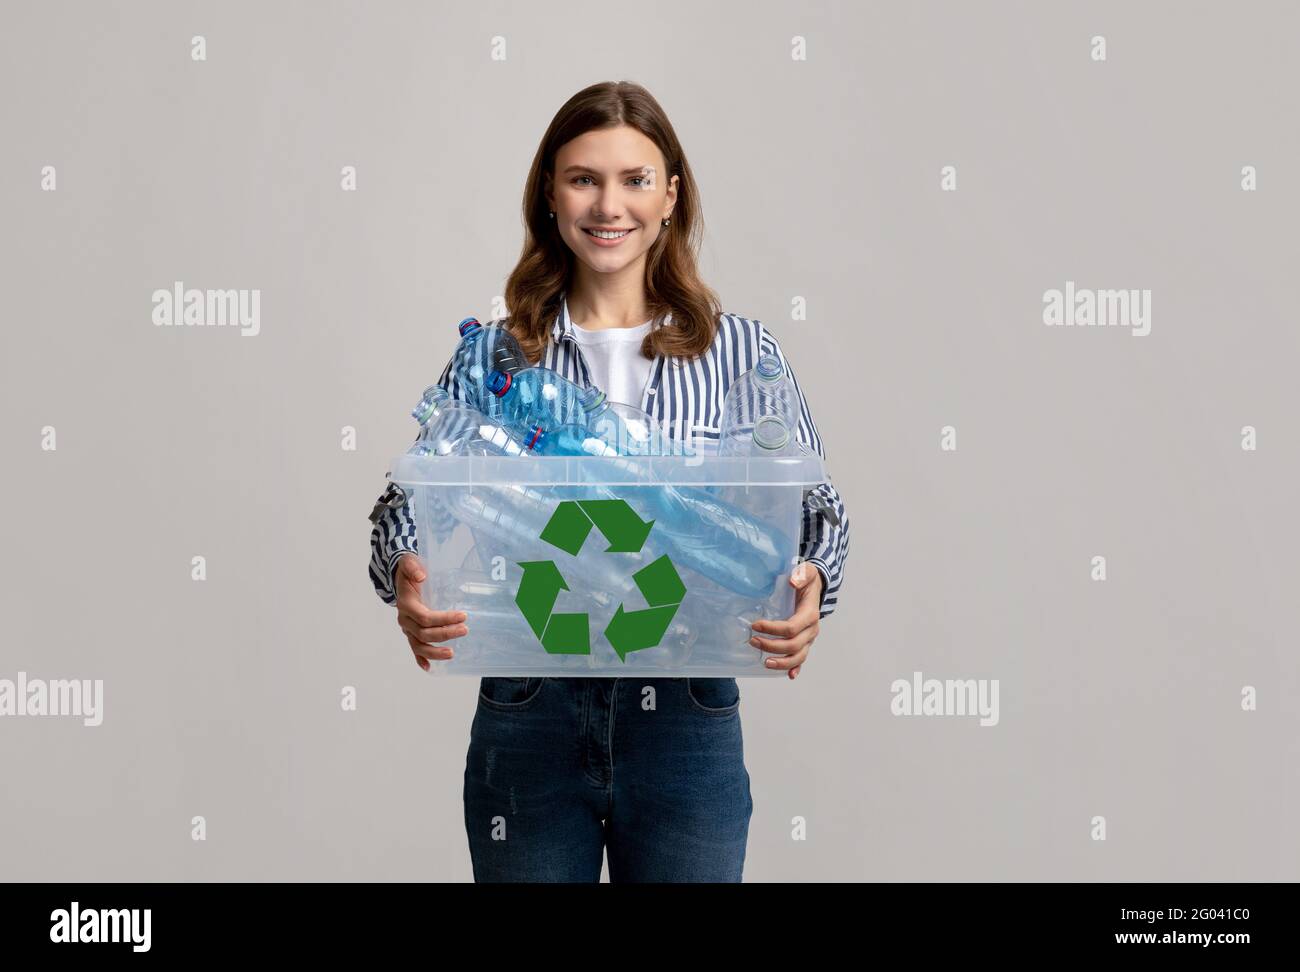 Reutilización de residuos. Alegre Mujer Joven Contenedor de transporte con botellas de plástico para el reciclaje Foto de stock